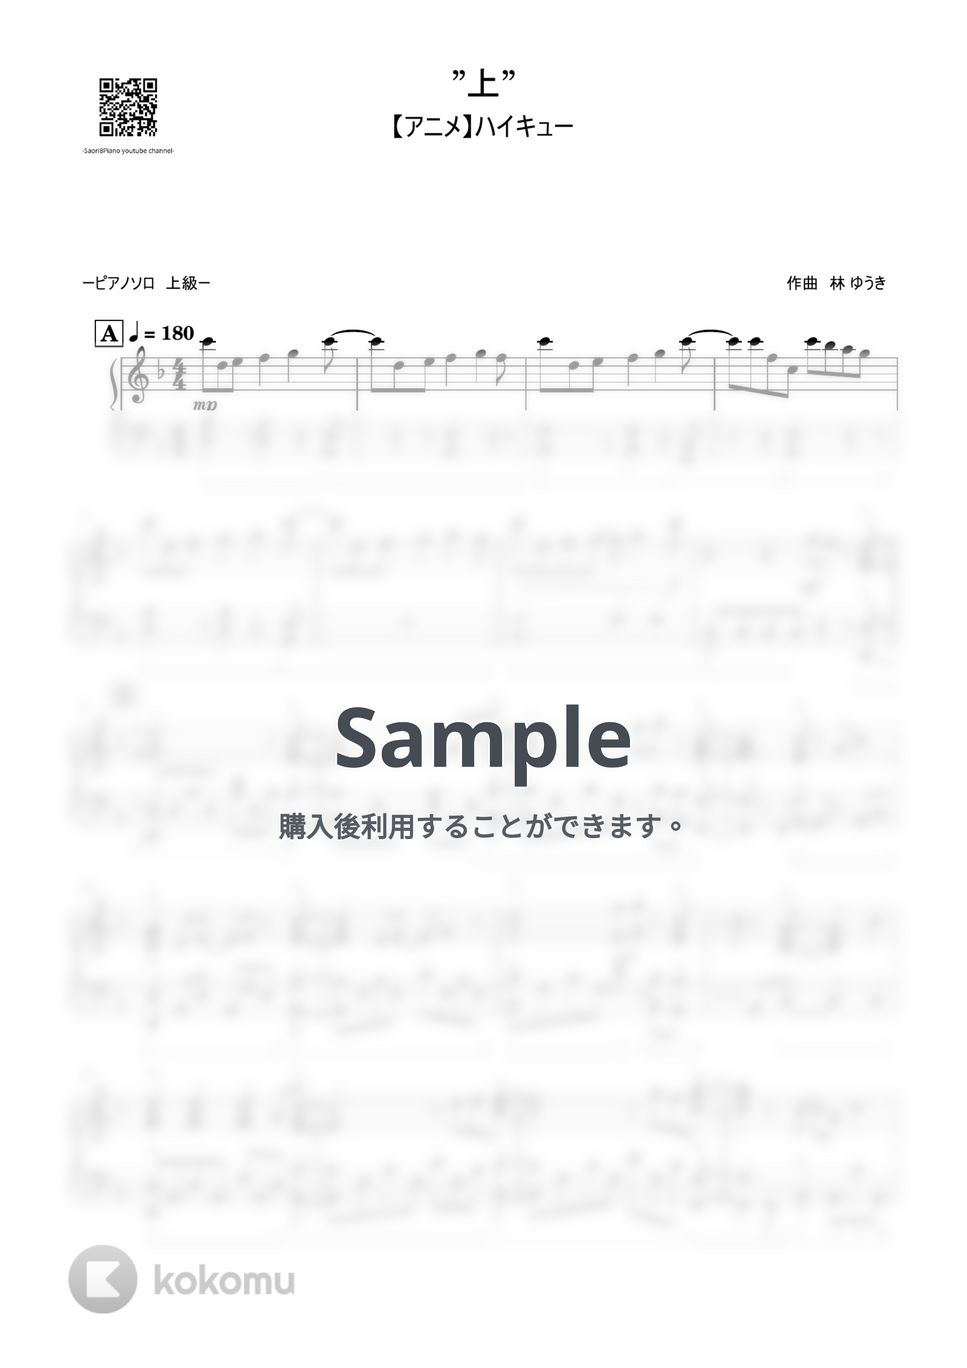 林ゆうき - "上" (ハイキューOST 上級レベル) by Saori8Piano